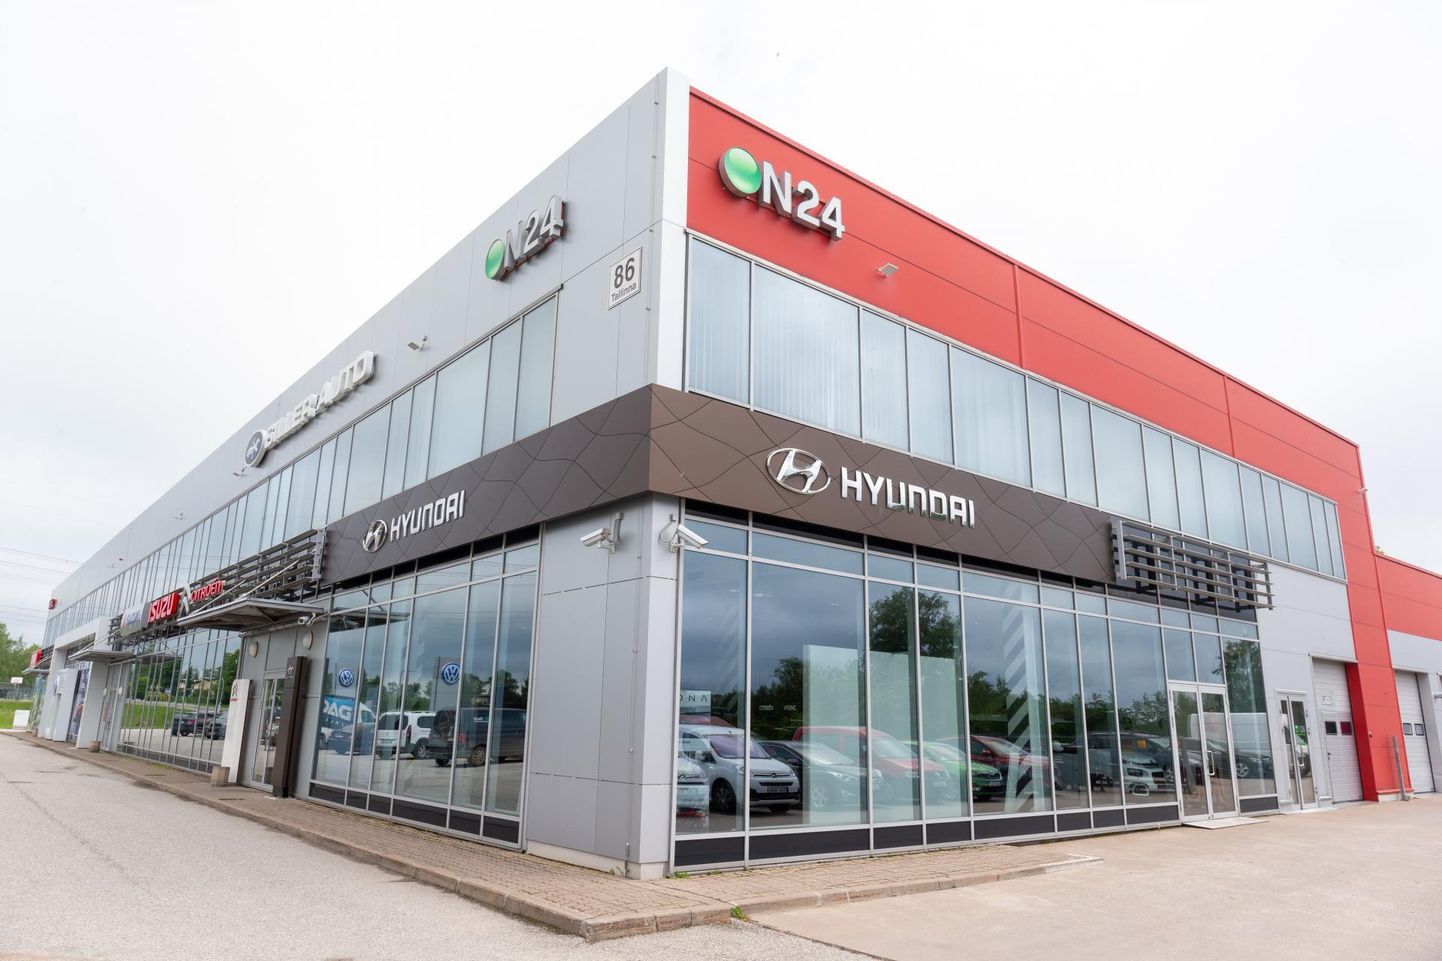 Viljandis asutatud veebikaubamaja ON24 müüb kaupa nii Eestis kui Soomes ning ettevõtte peakontor asub Viljandi linna piiril Unistari ärimajas.